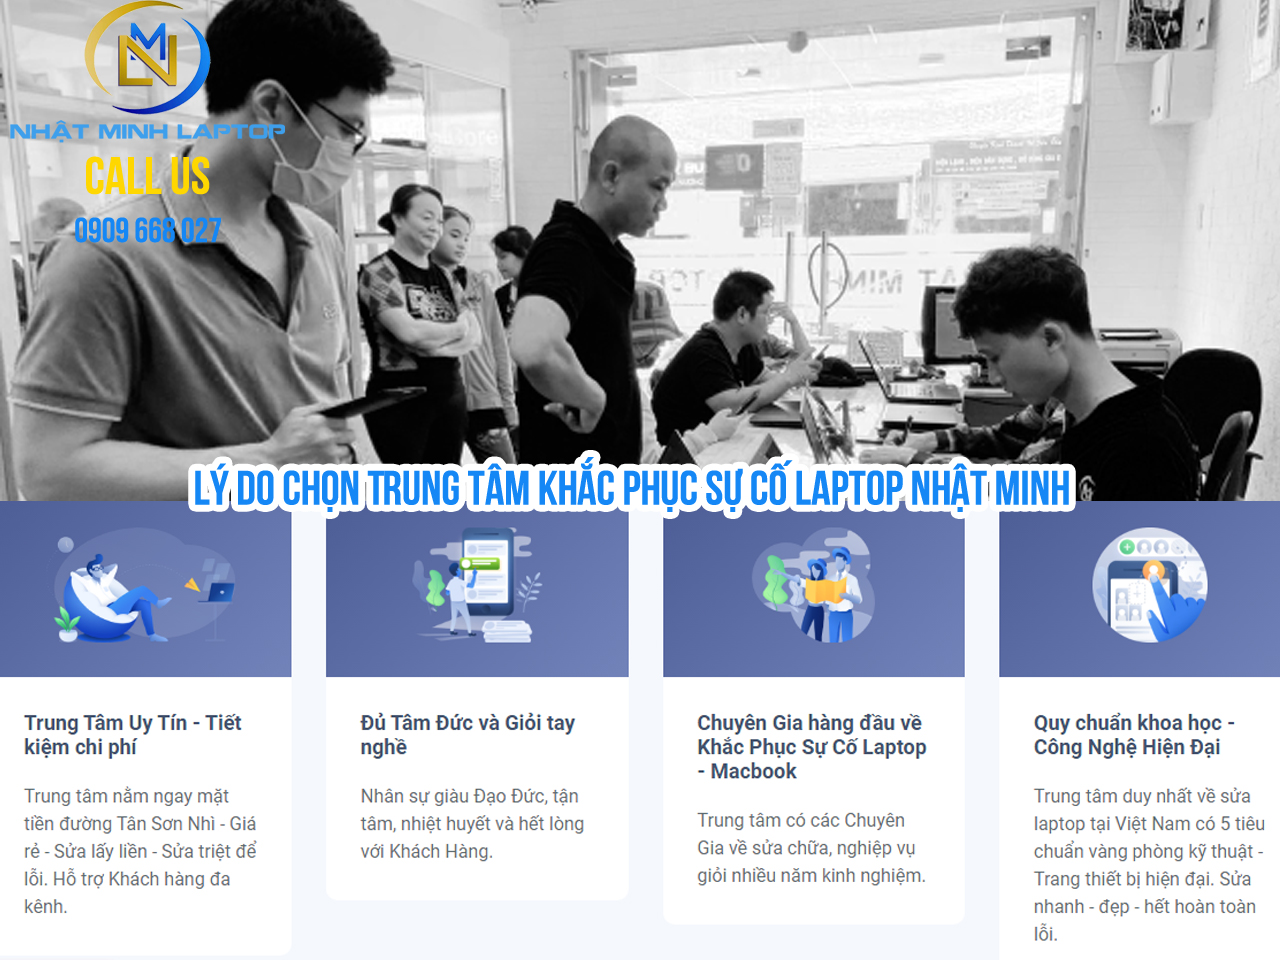 Sửa laptop giá rẻ và uy tín tại Trung Tâm Nhật Minh